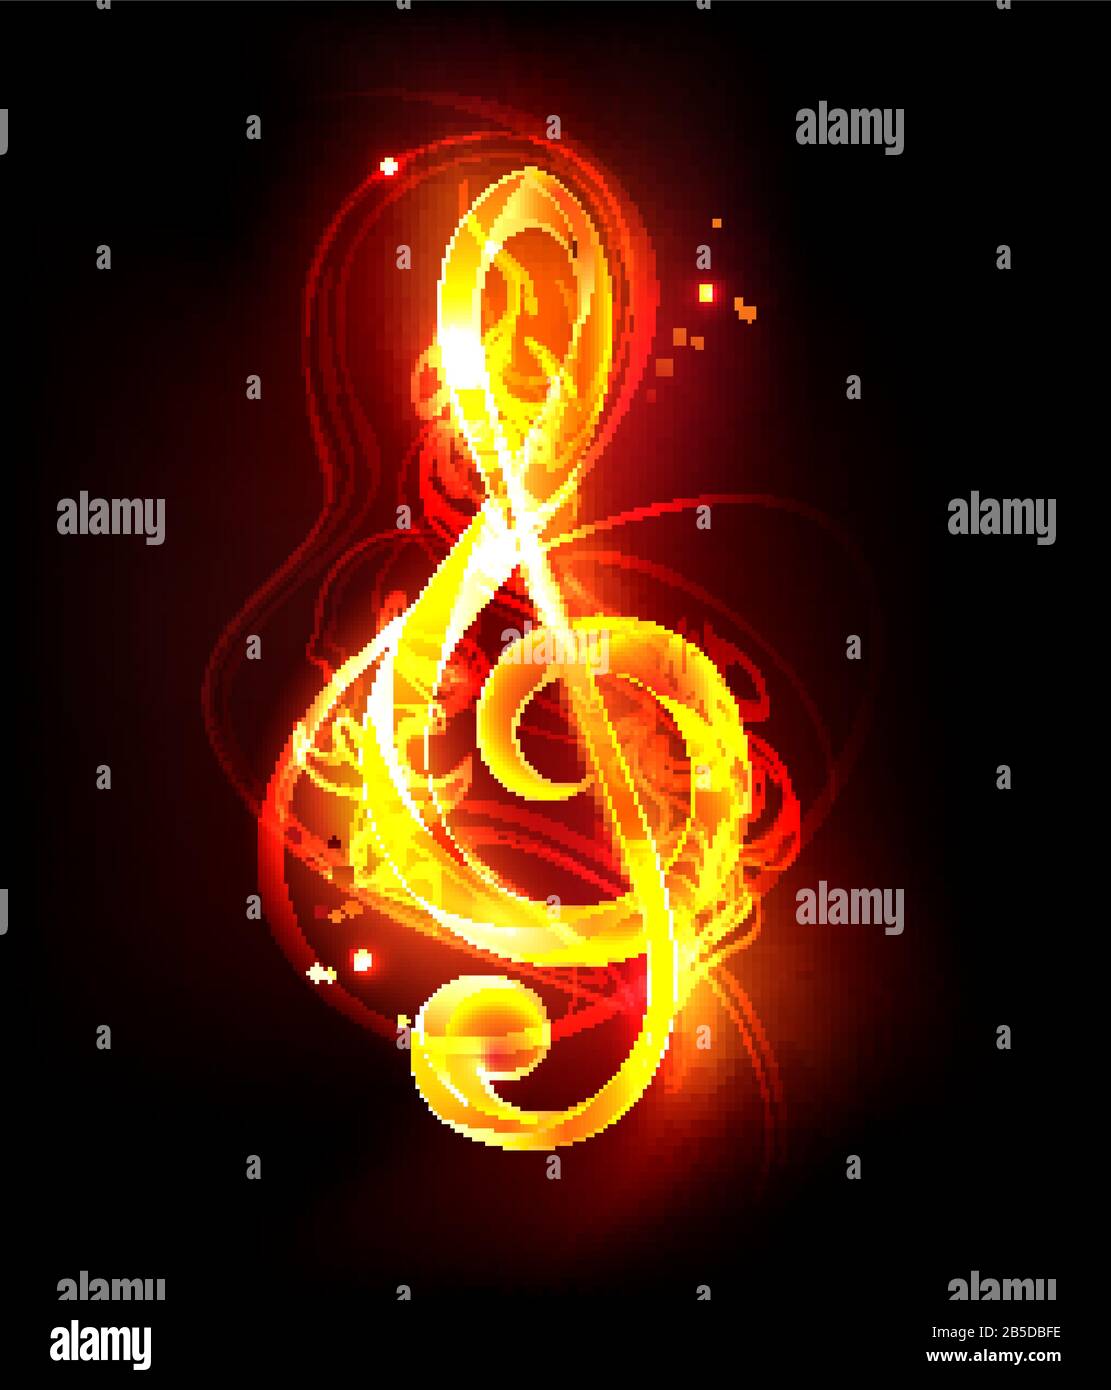 Chiave musicale artisticamente disegnata fatta di fiamma rossa su sfondo nero. Simbolo Fiery. Illustrazione Vettoriale